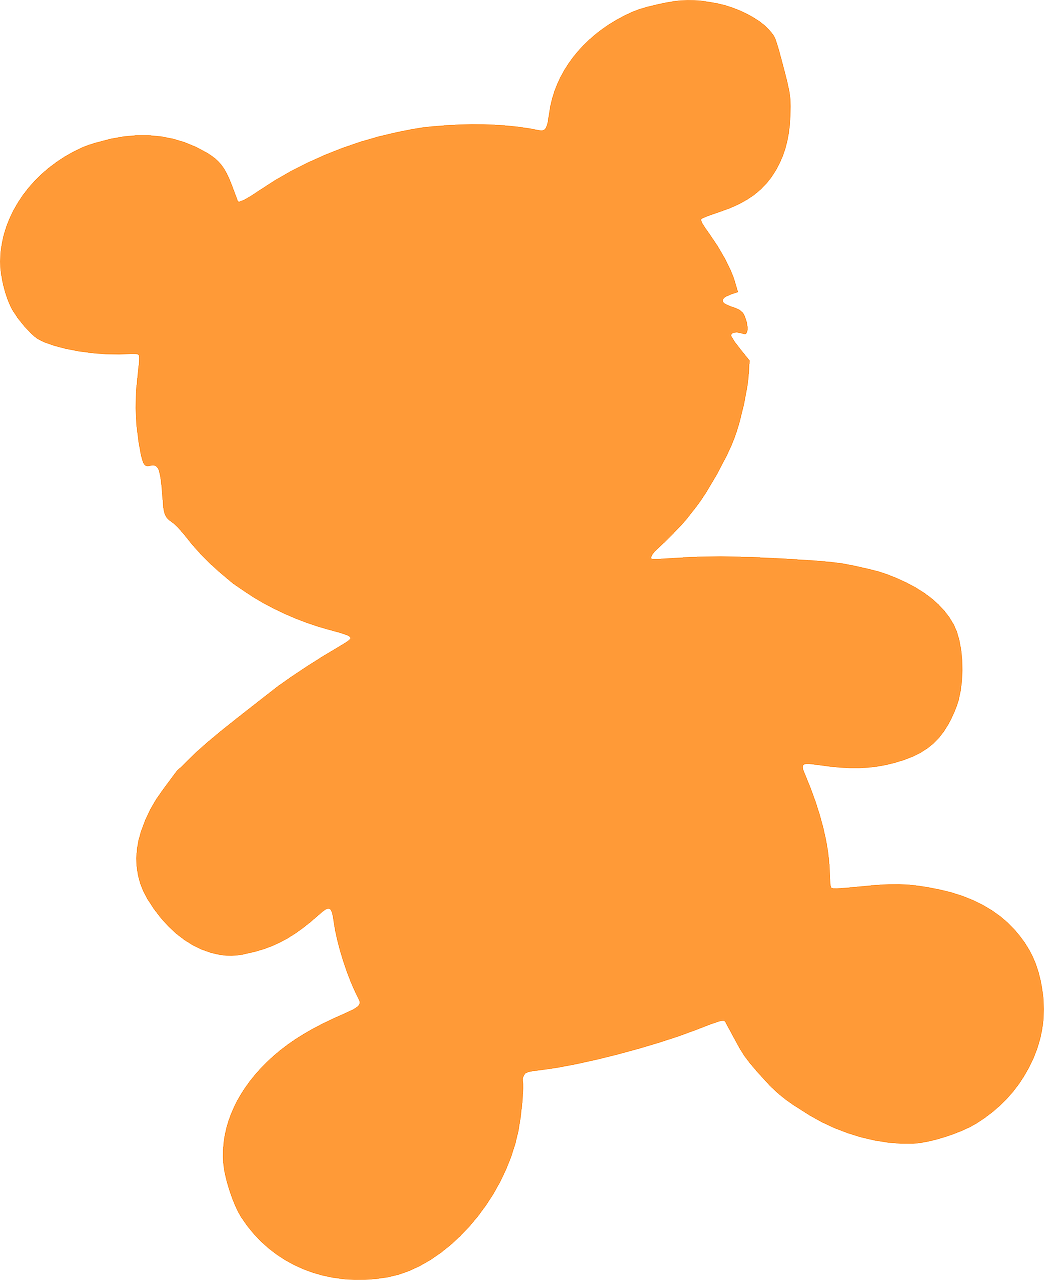 a teddy bear is on an orange sticker